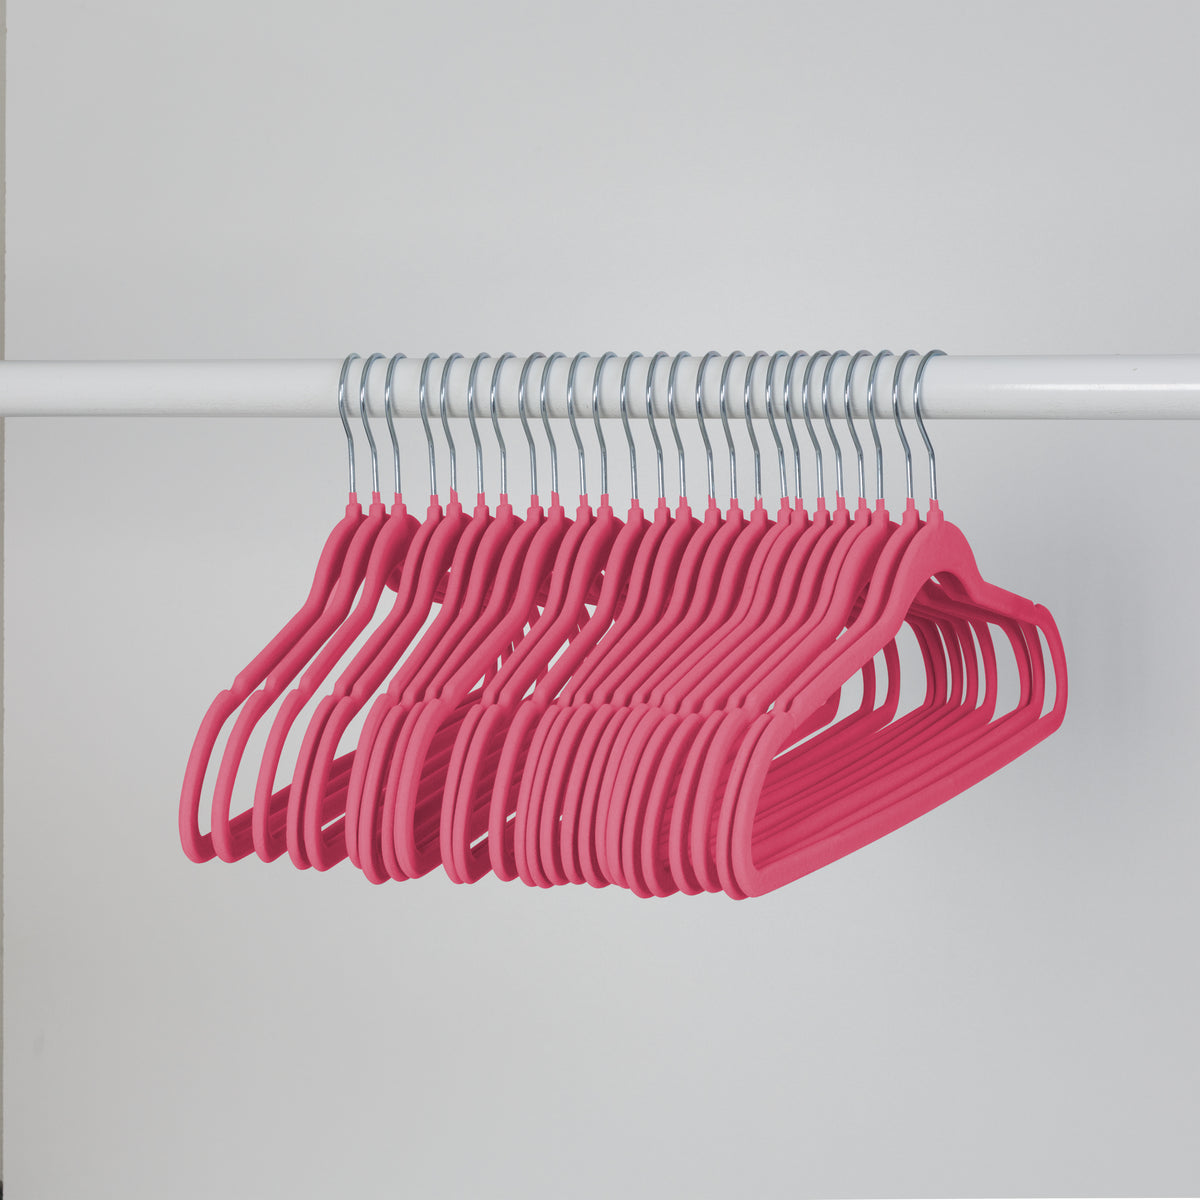 Honey Can Do Pink Non-Slip Velvet Hangers 35-Pack HNG-09733, Color